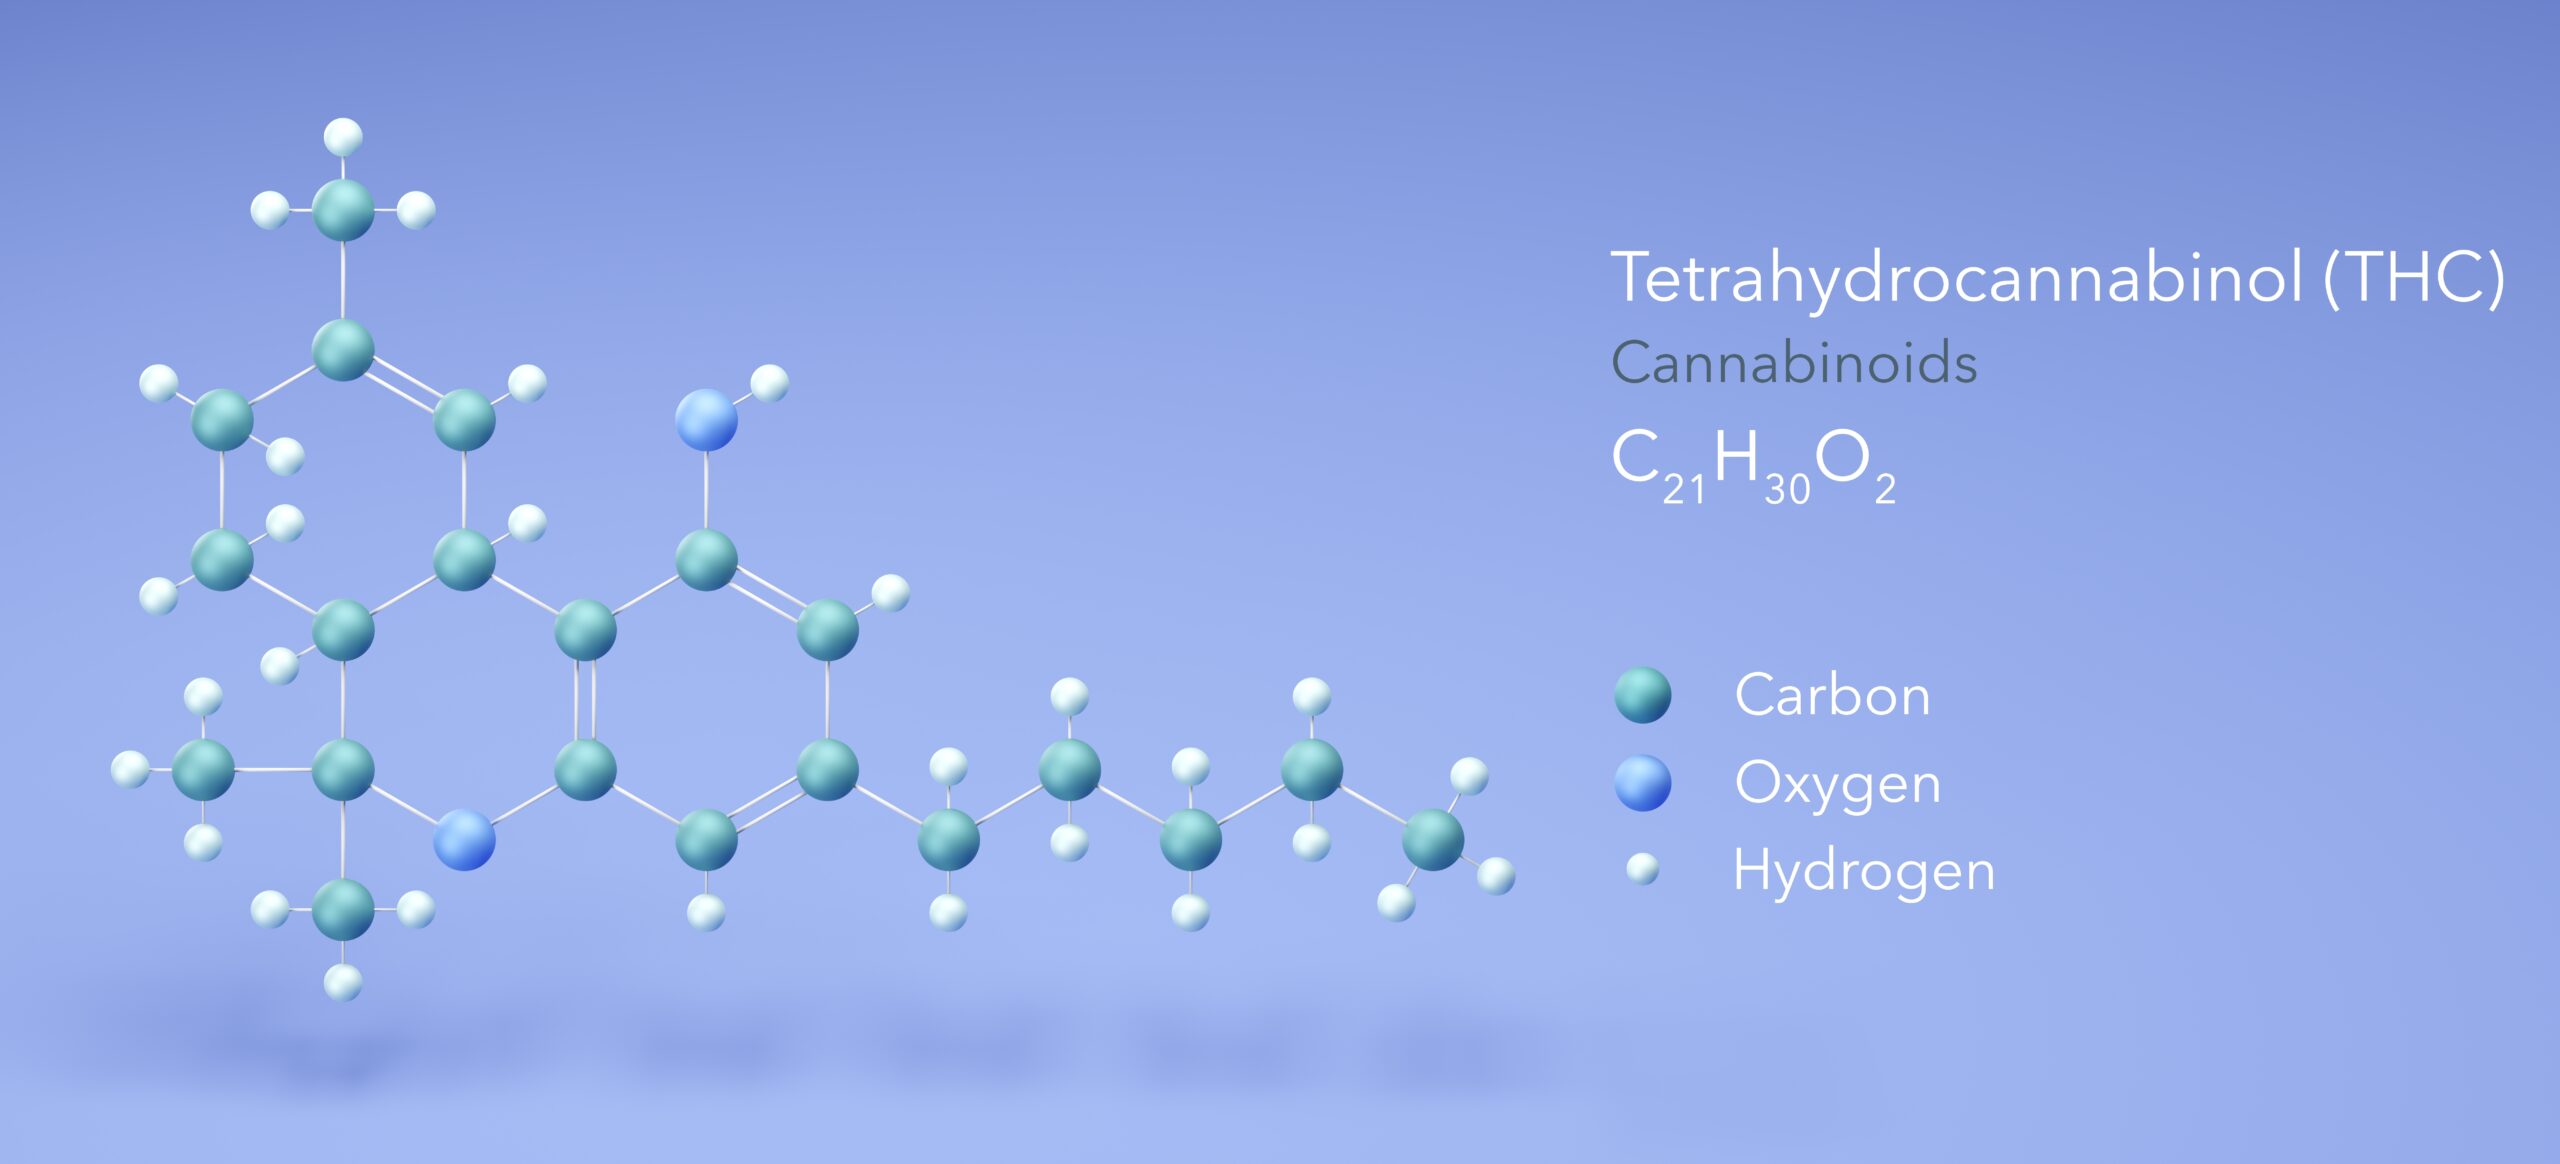 Tetrahydrocannabinol Cannabinoid Flavonoid Terpen